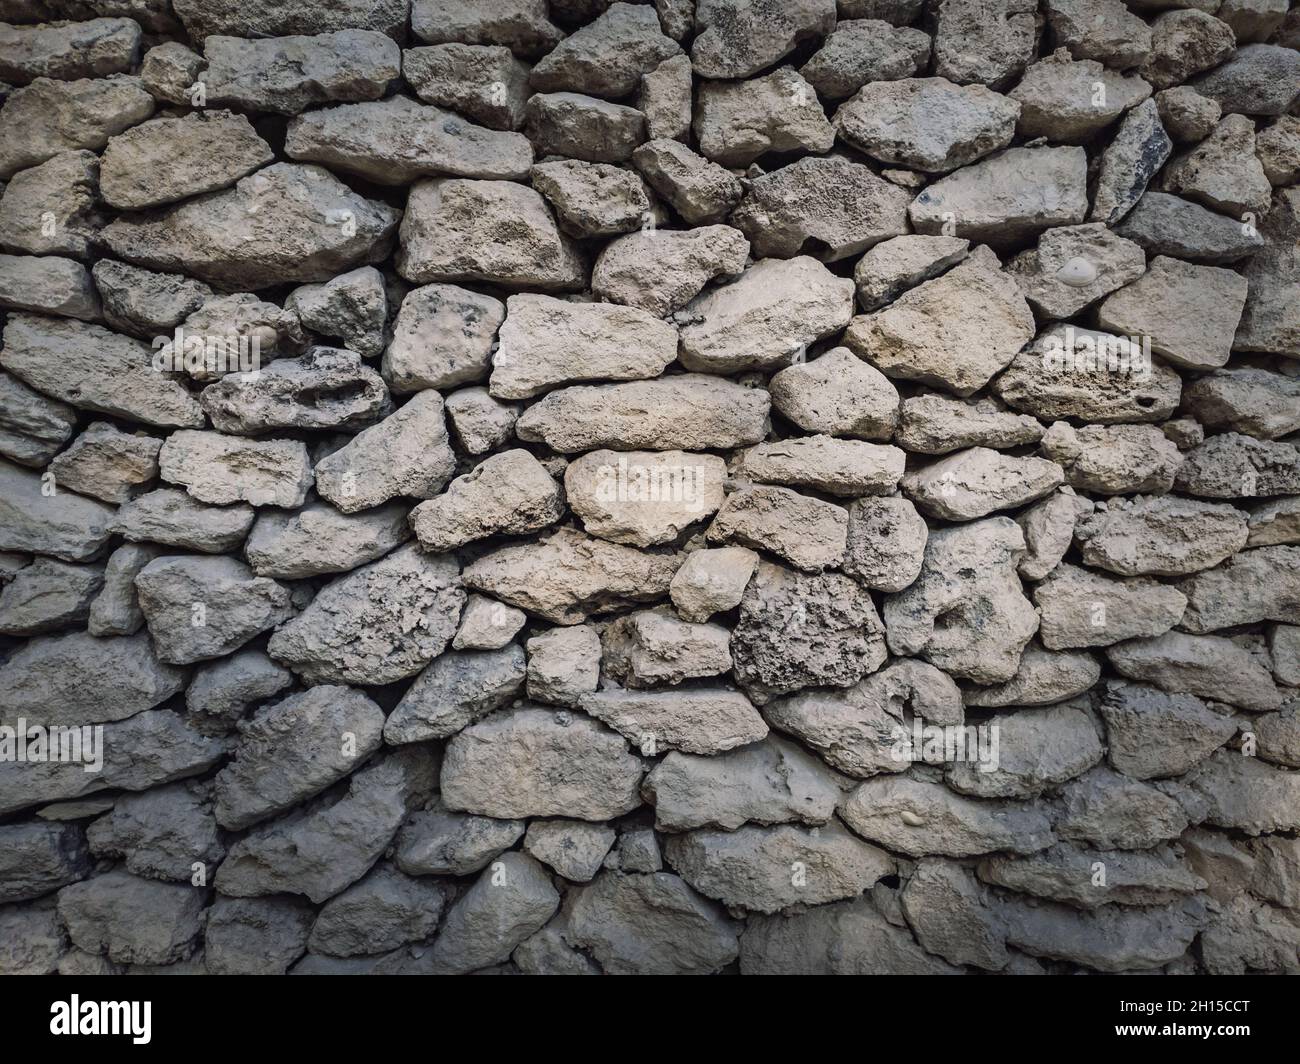 Unregelmäßiger Stein Mauerwerk Wand Hintergrund. Alte Kalksteinfelsen unterschiedlicher Größe und Formen sorgfältig gestapelt. Detaillierte Textur des Bauelements. Stockfoto